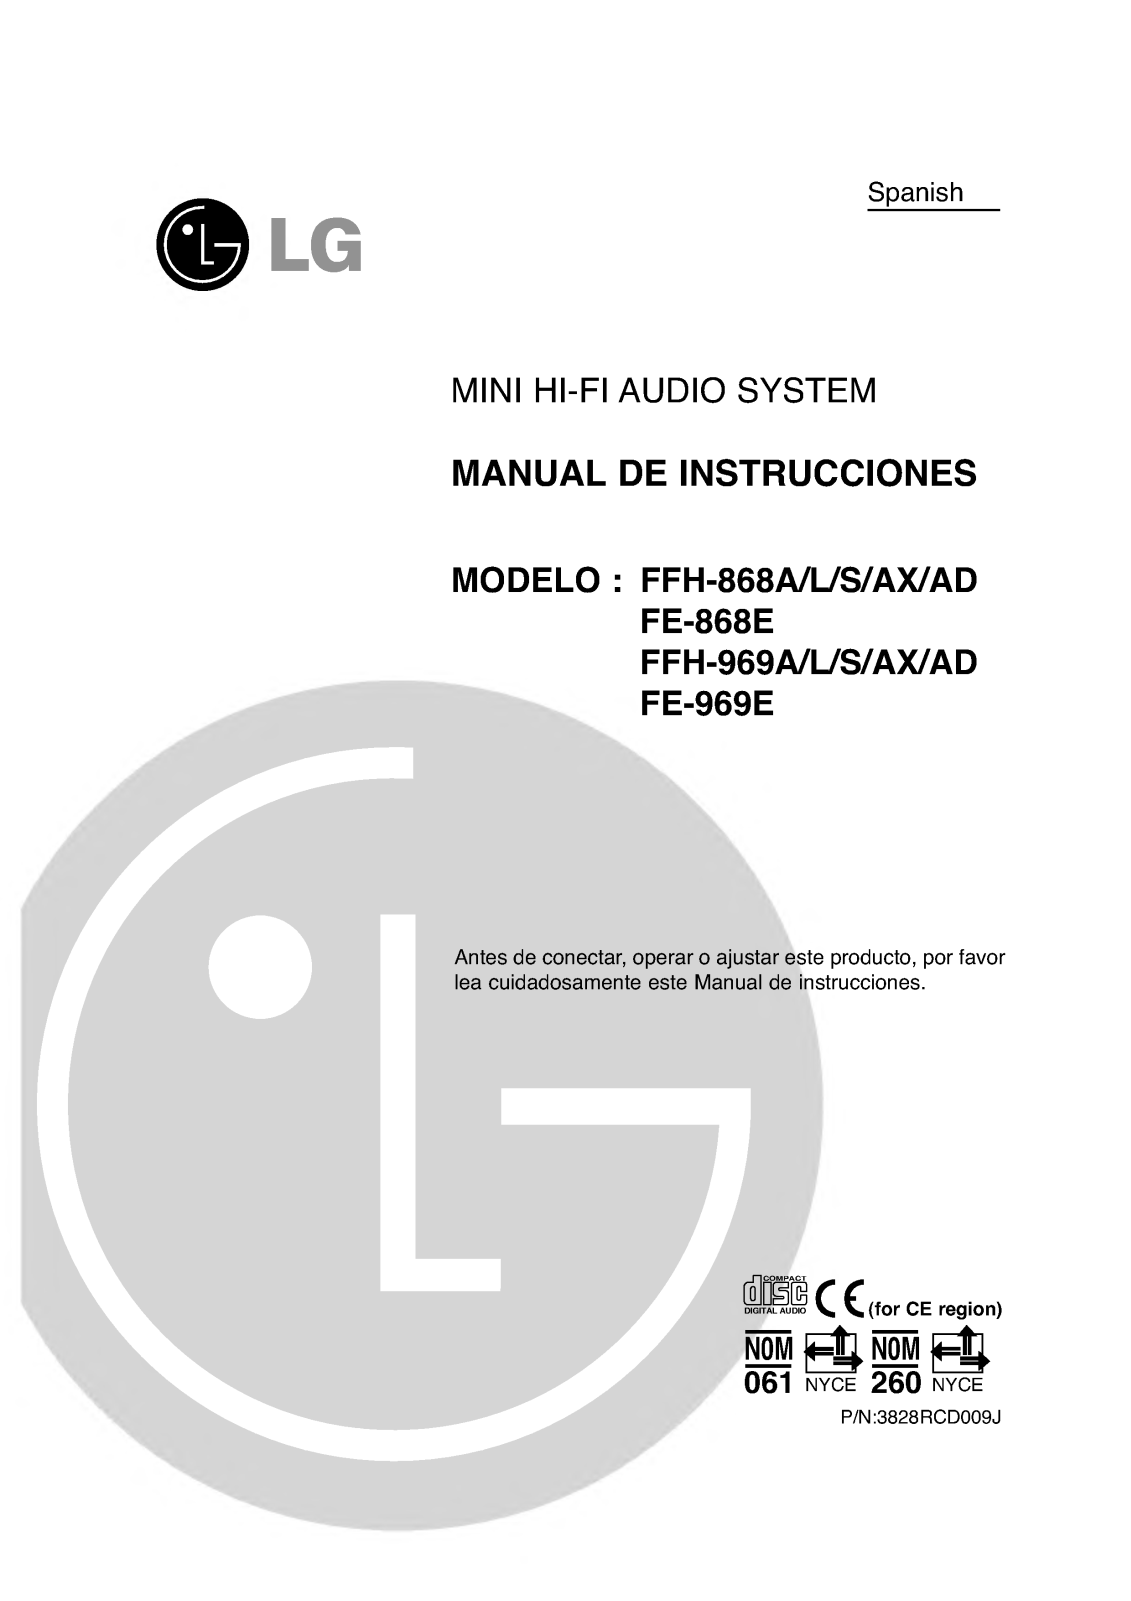 Lg FFH-868A, FFH-868L, FFH-868S, FFH-868AX, FFH-868AD Instructions Manual